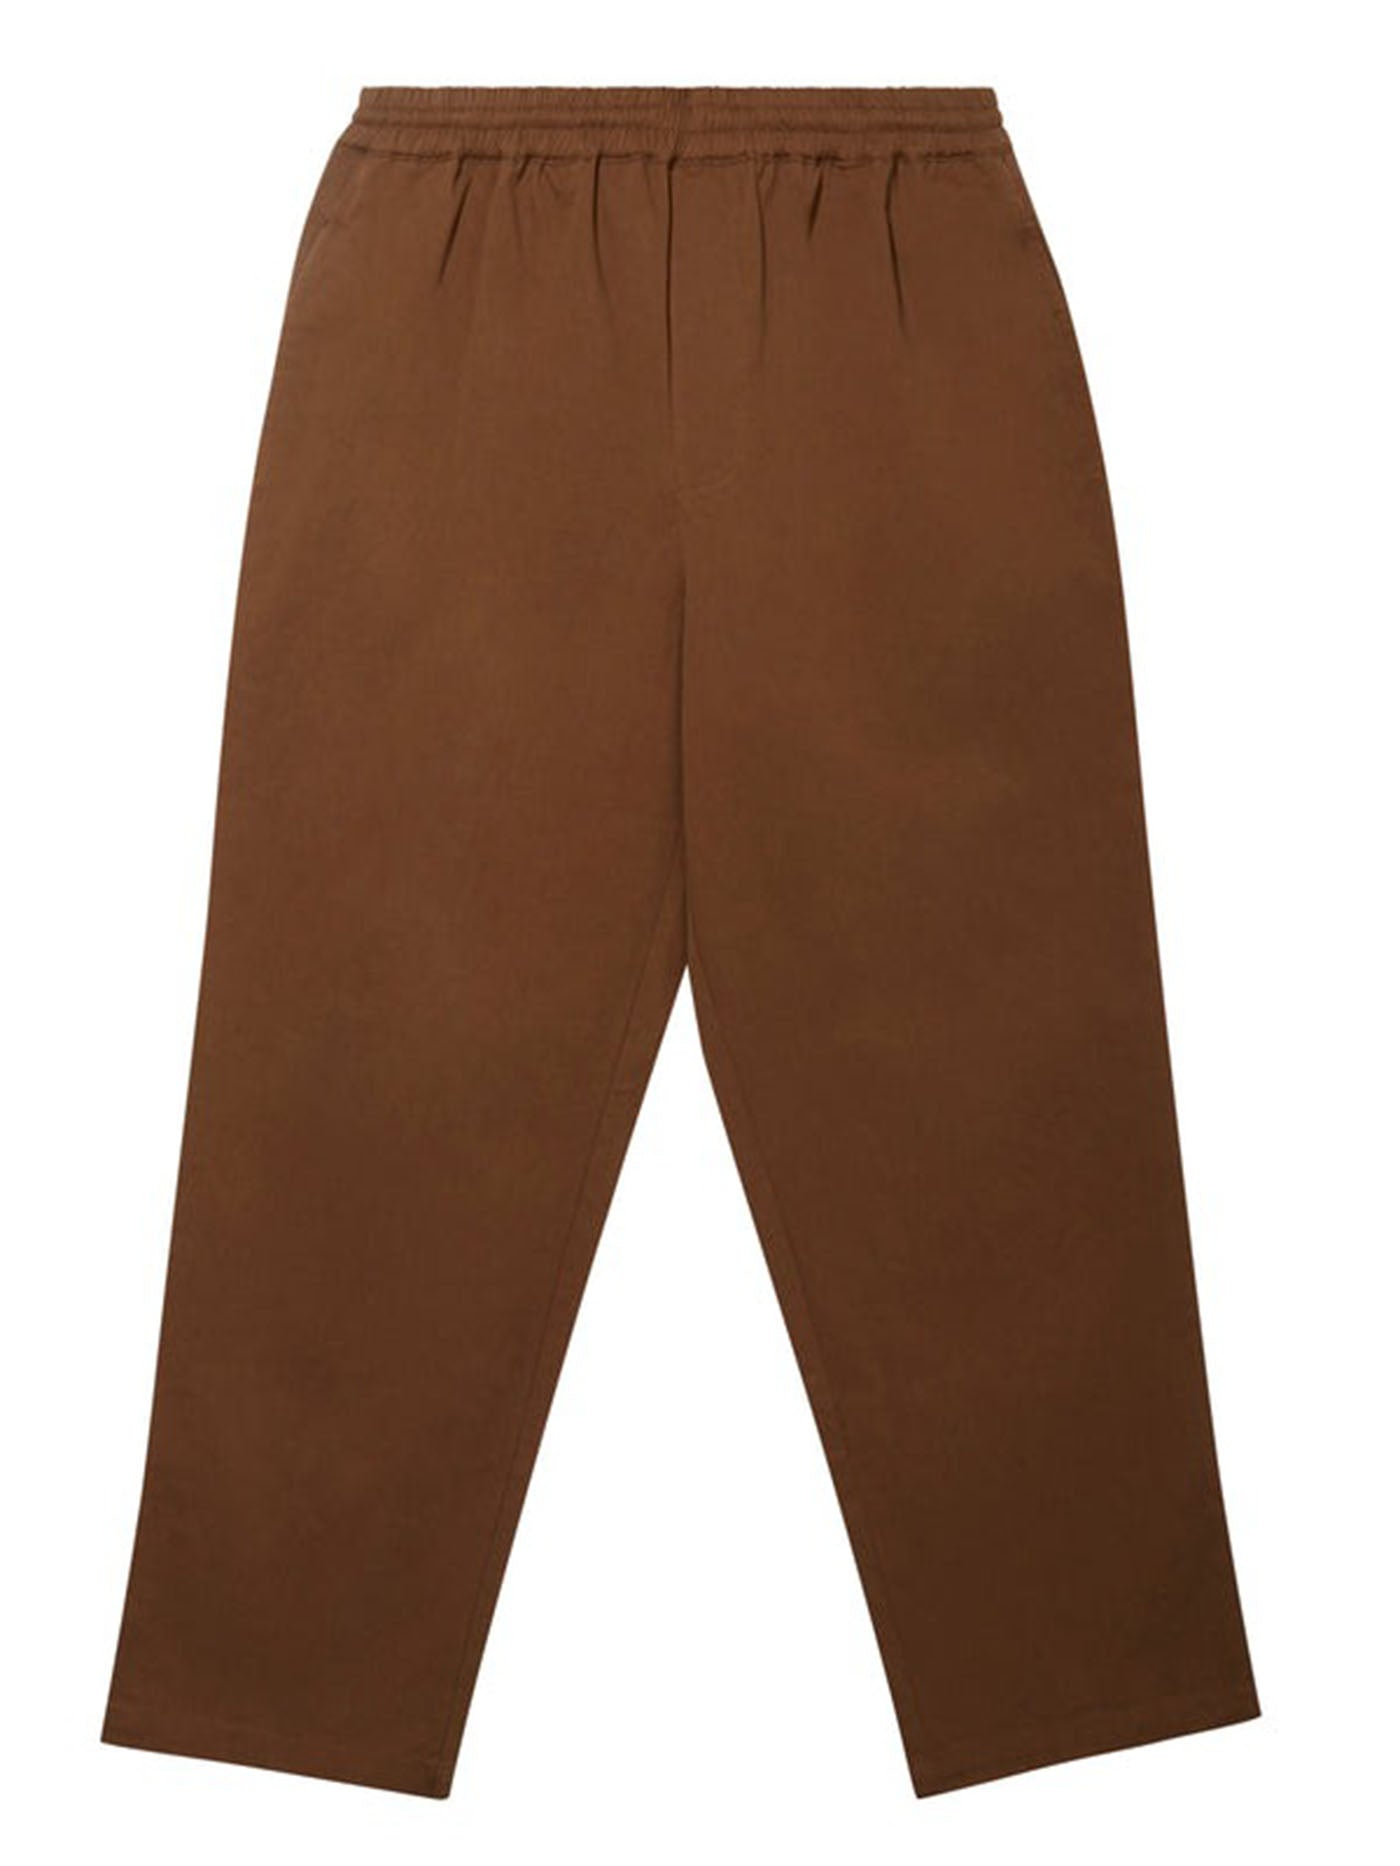 Authentic SUPREME Velvet Work Trouser Pants 100% cotton brown size